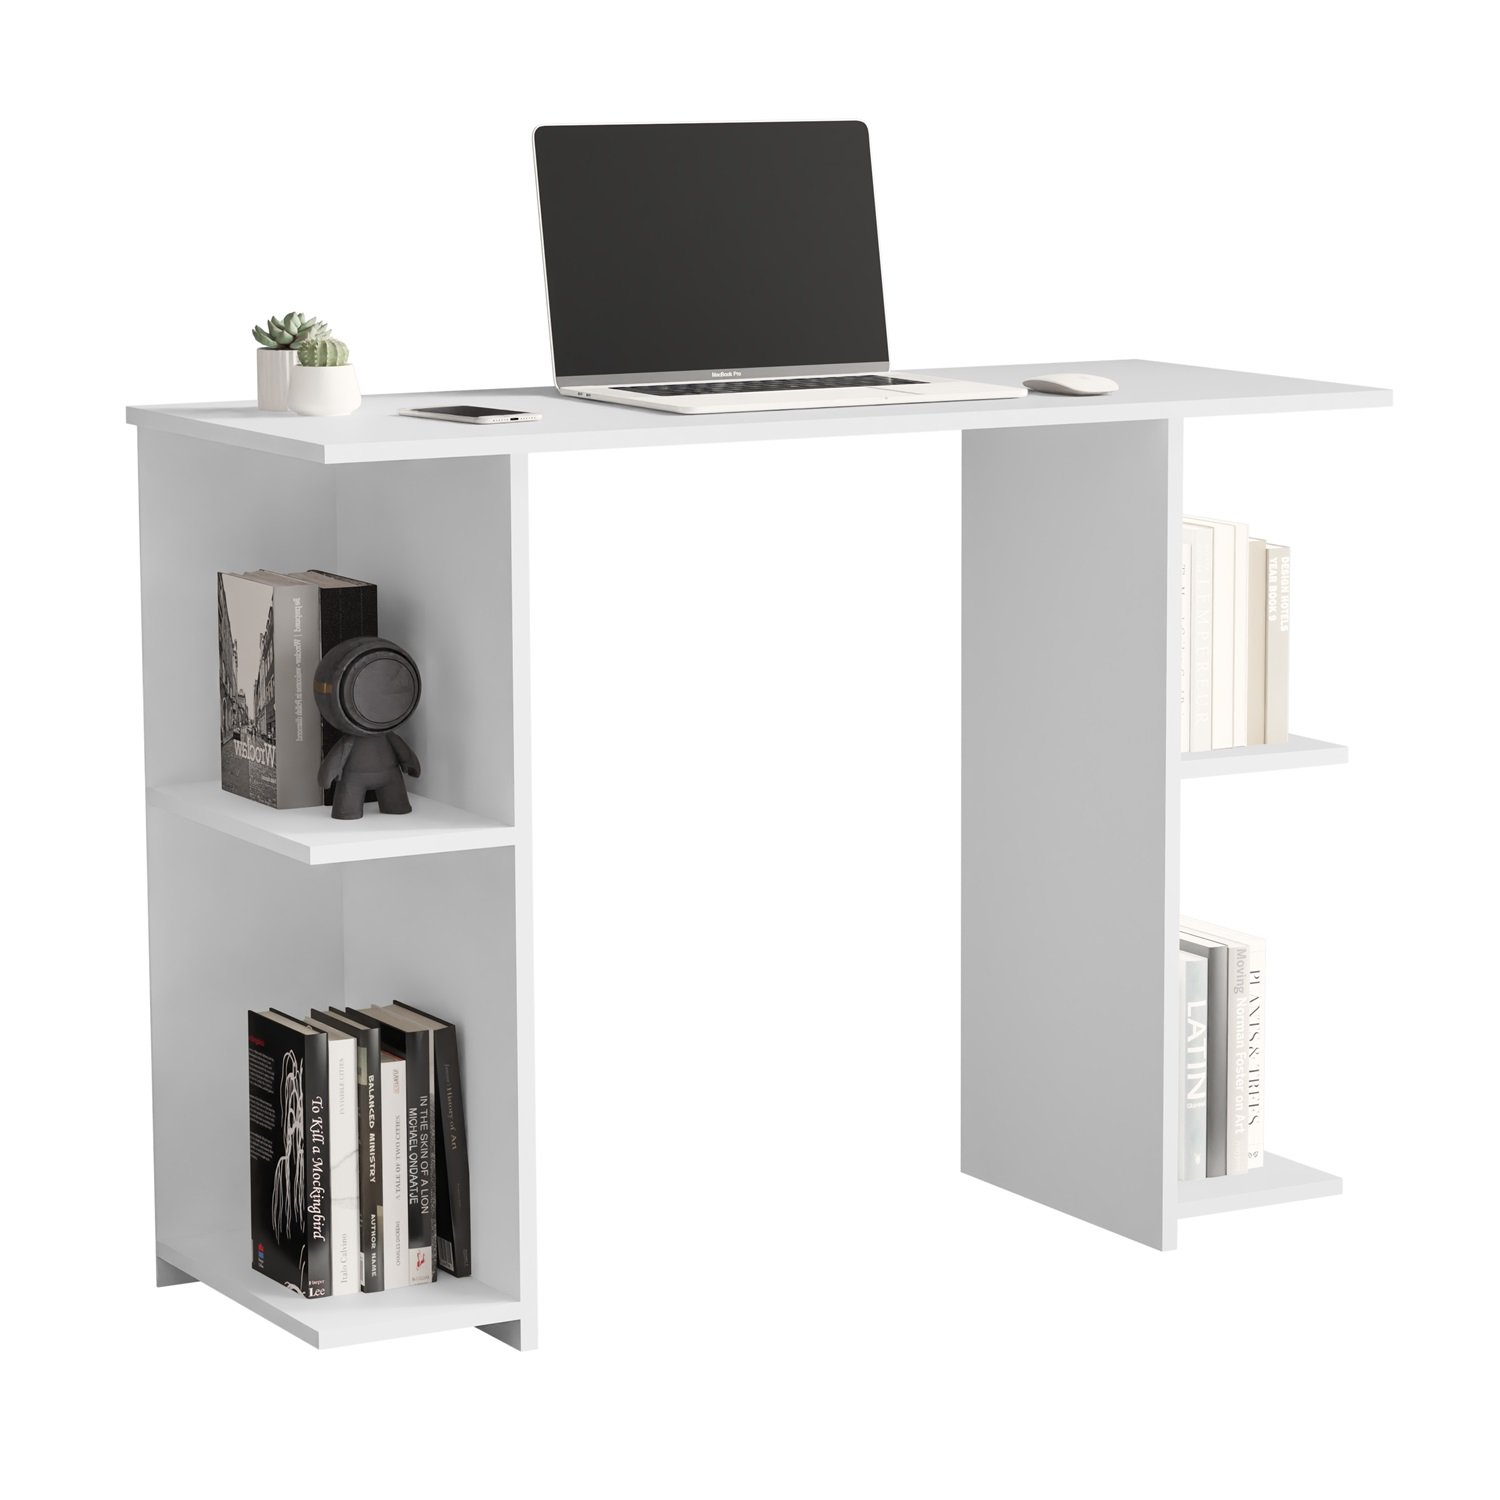 Mesa Escrivaninha com Prateleira Multifuncional Haza para Escritório Home Office Estudo:branco - 1